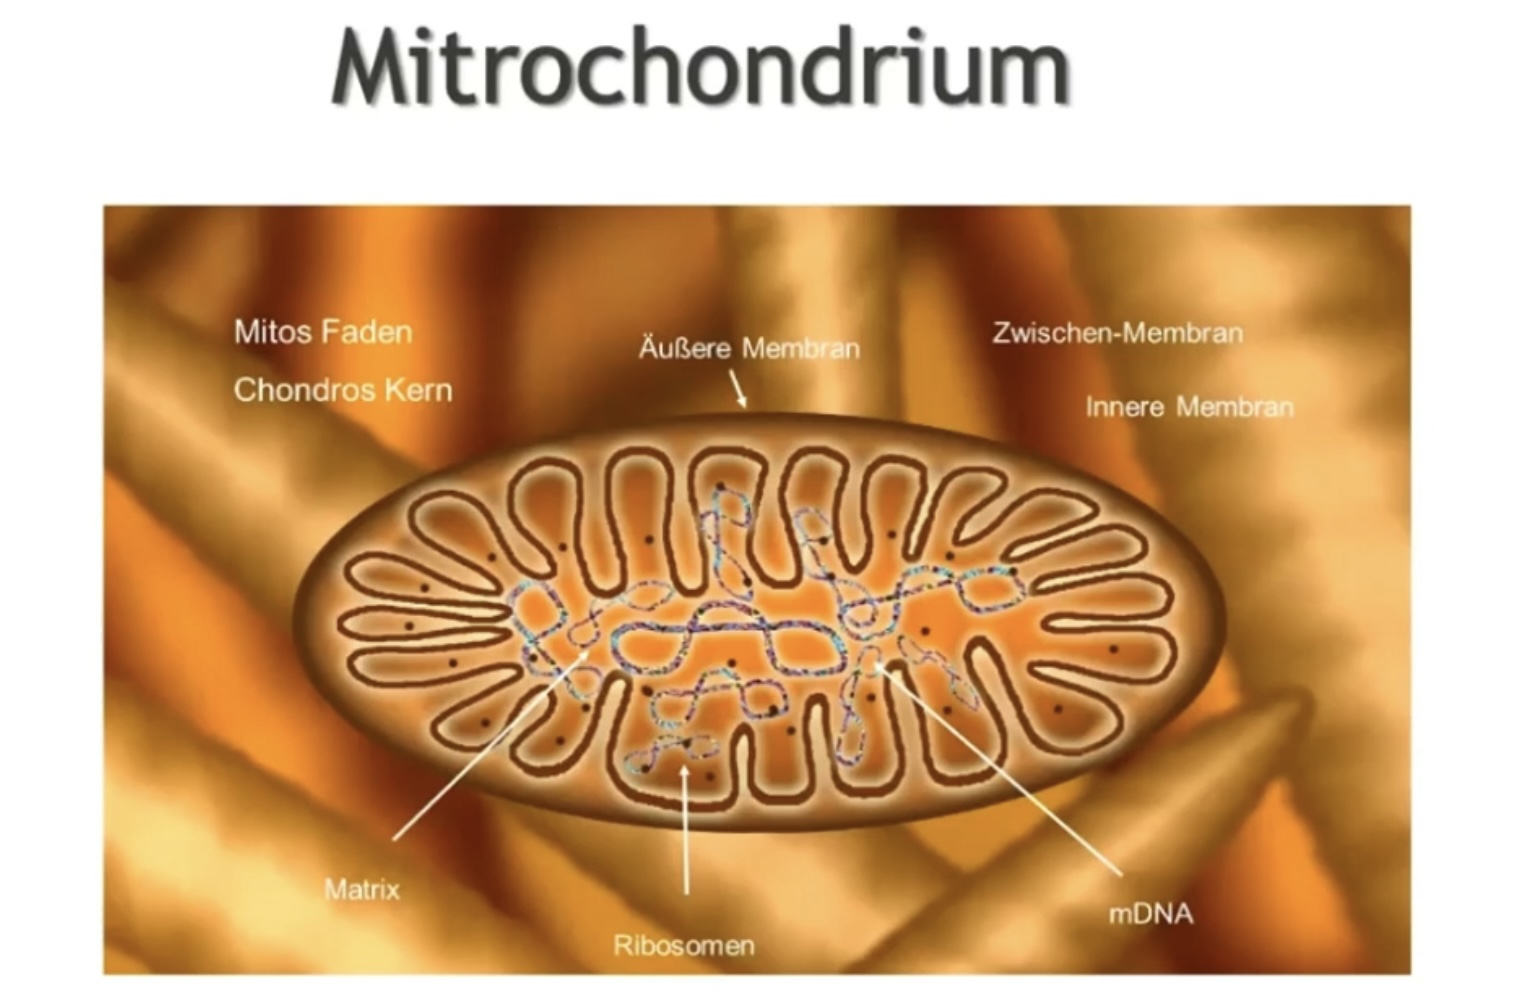 Mitrochondrium